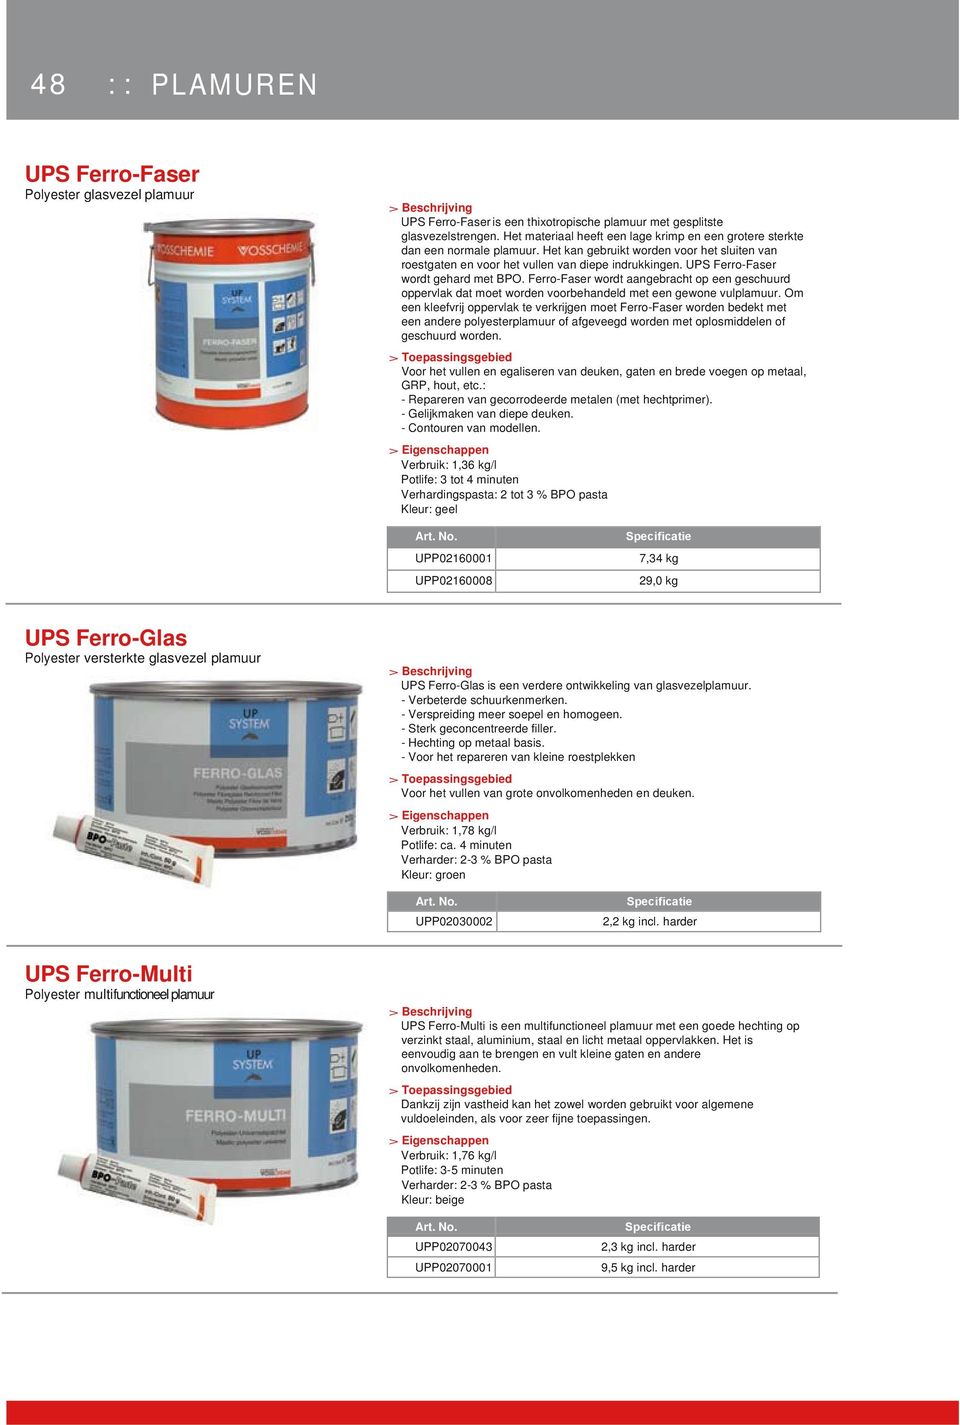 UPS Ferro-Faser wordt gehard met BPO. Ferro-Faser wordt aangebracht op een geschuurd oppervlak dat moet worden voorbehandeld met een gewone vulplamuur.